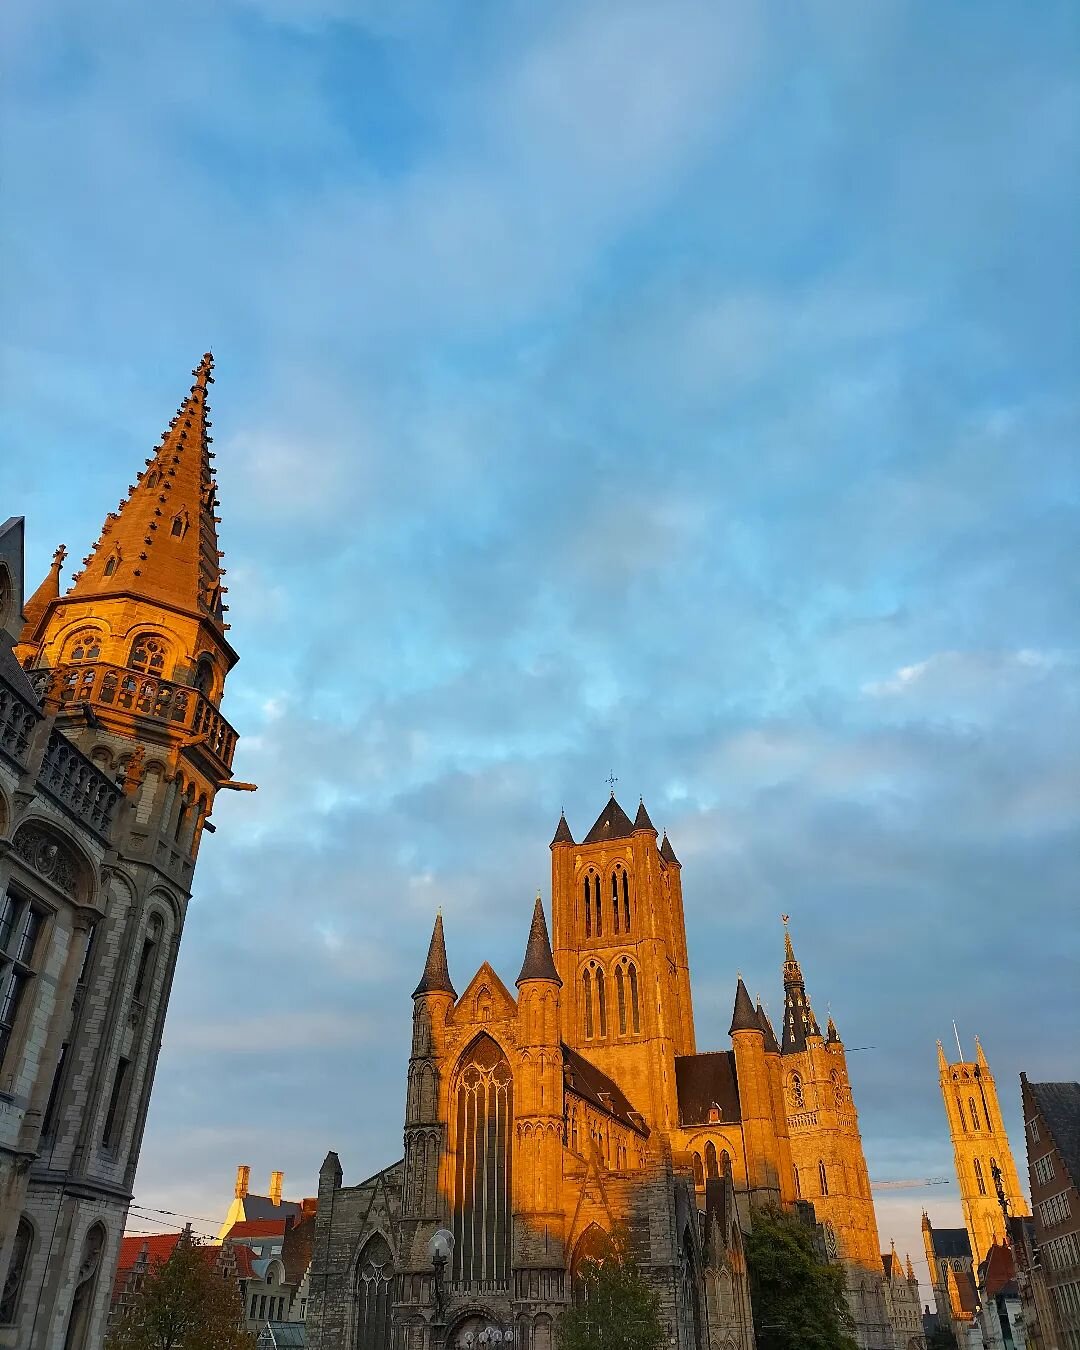 Gent golden hour 💙🇧🇪

#gent #ghent #belgium #belgie #goldenhour #architecture #medieval #city #flemish #flanders #vlaanderen #europe #cathedral #towers #light #belgian #home #travel #european #vlaams #sintbaafs